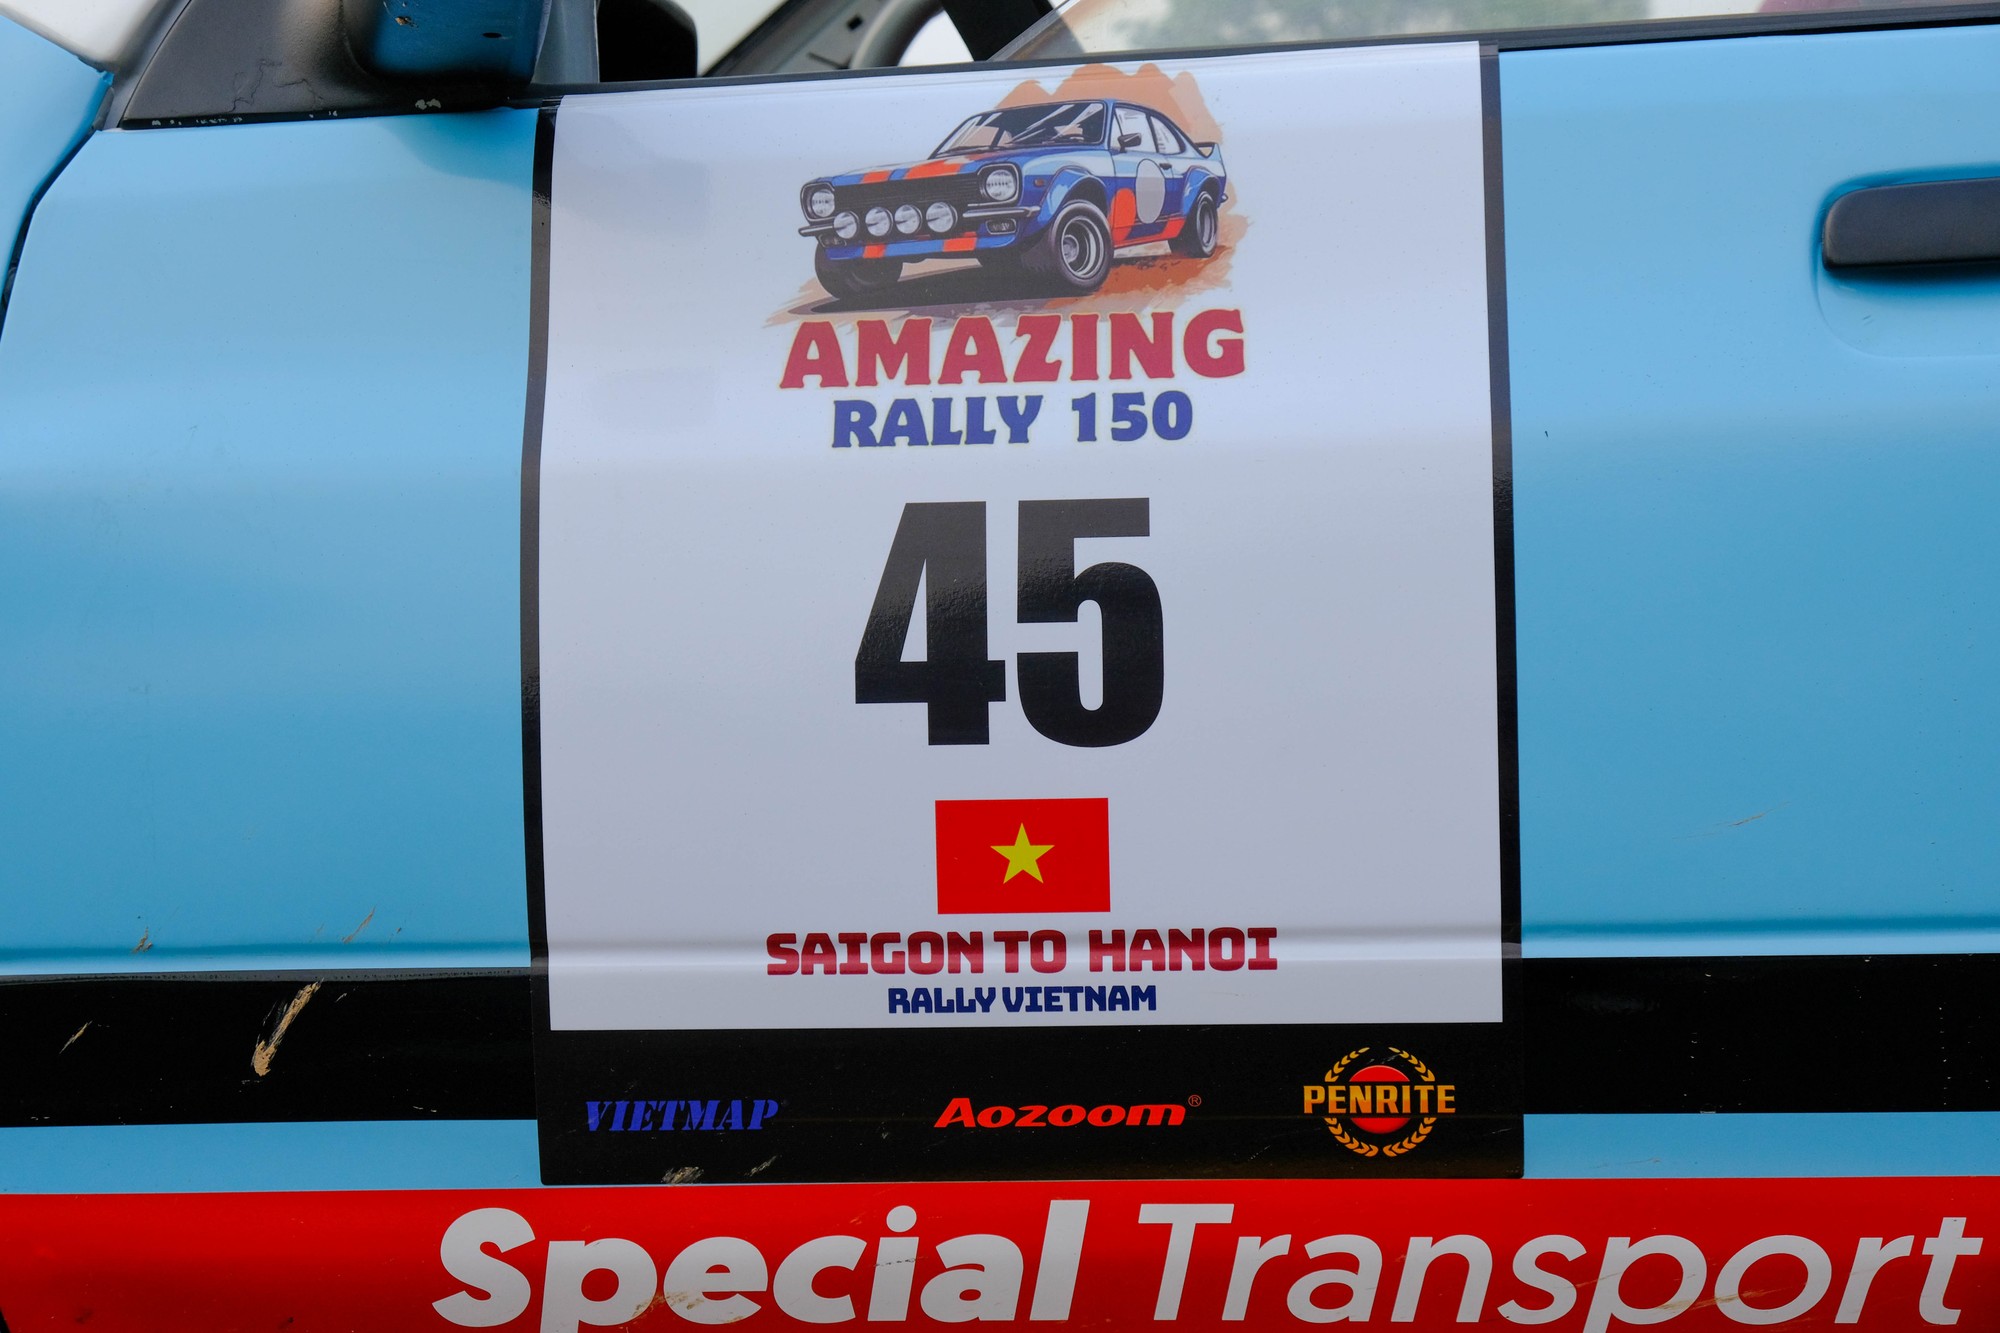 Biển hiệu của chiếc KIA Pride CD5 trong hành trình Amazing Rally 150. Ảnh: Lê An/Mekong ASEAN.